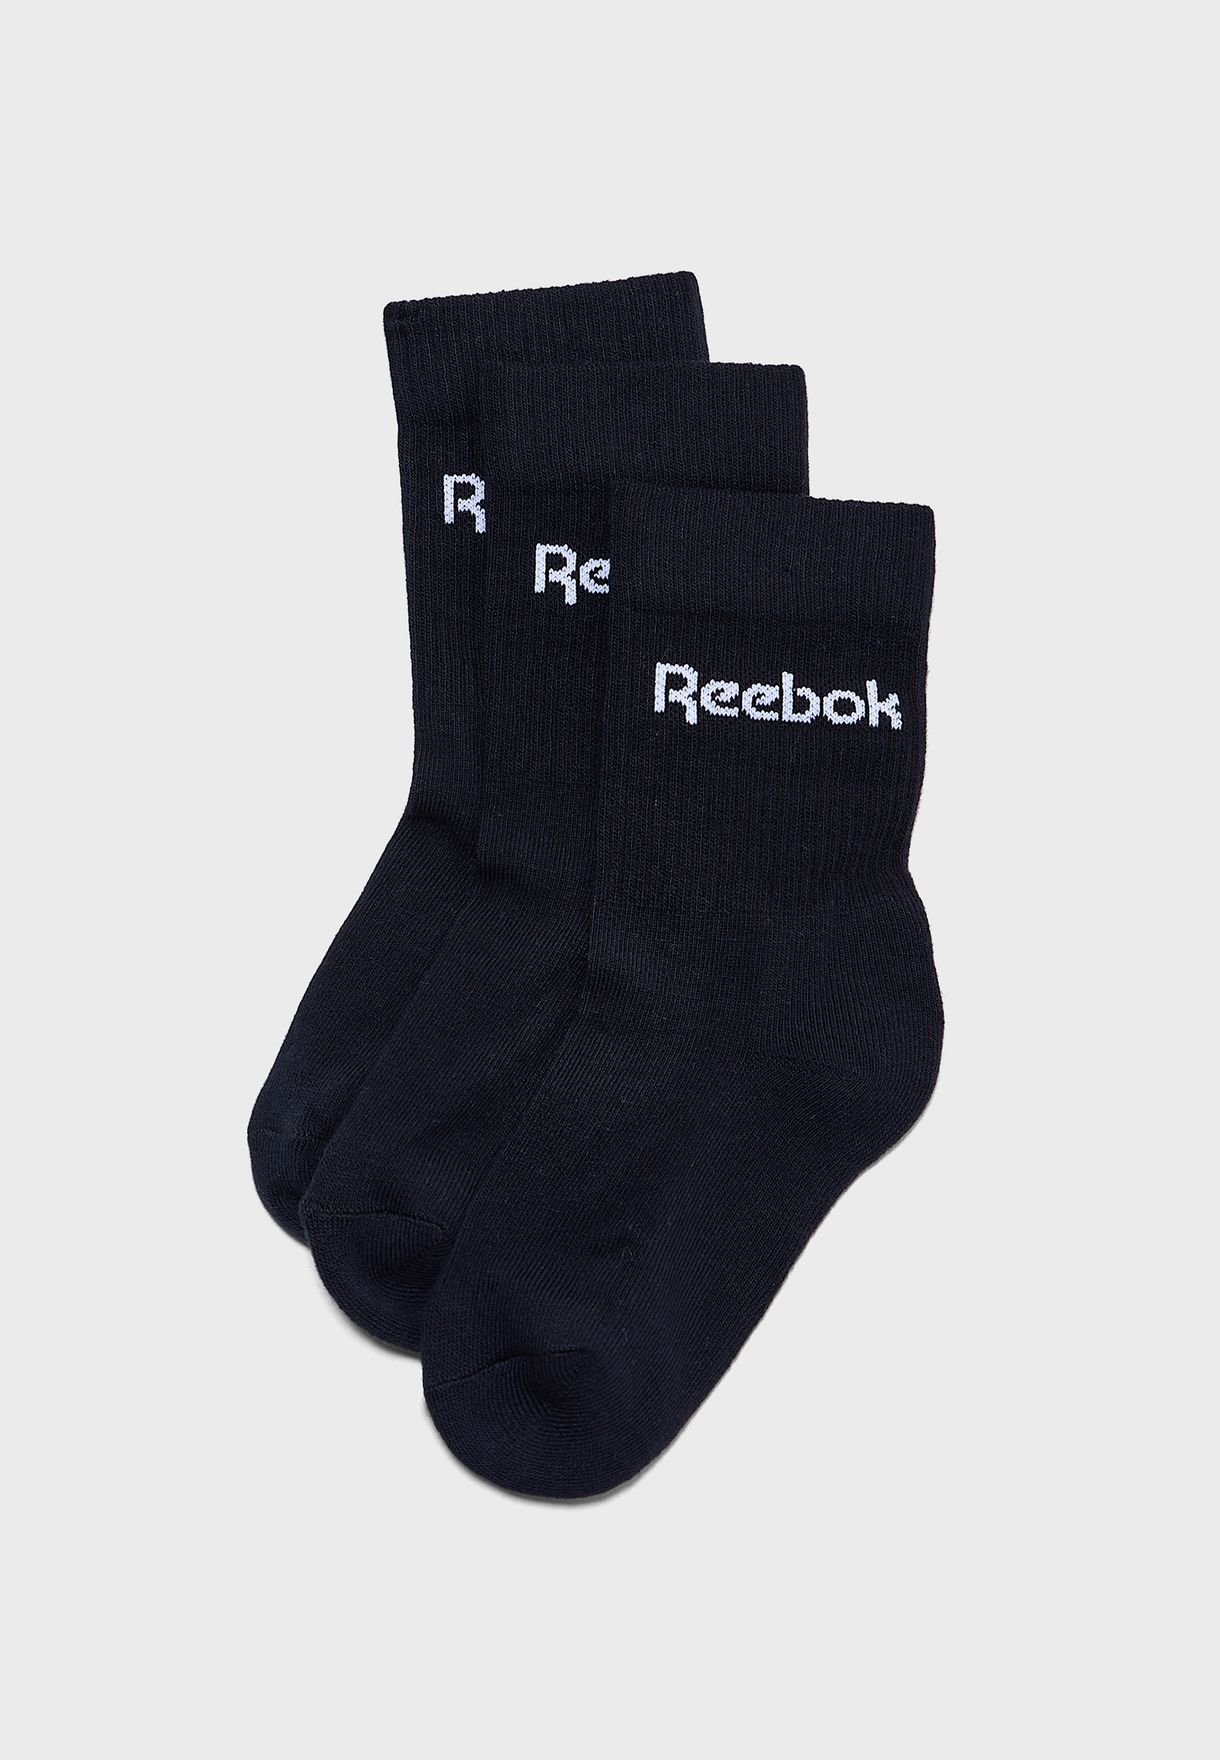 kids reebok socks